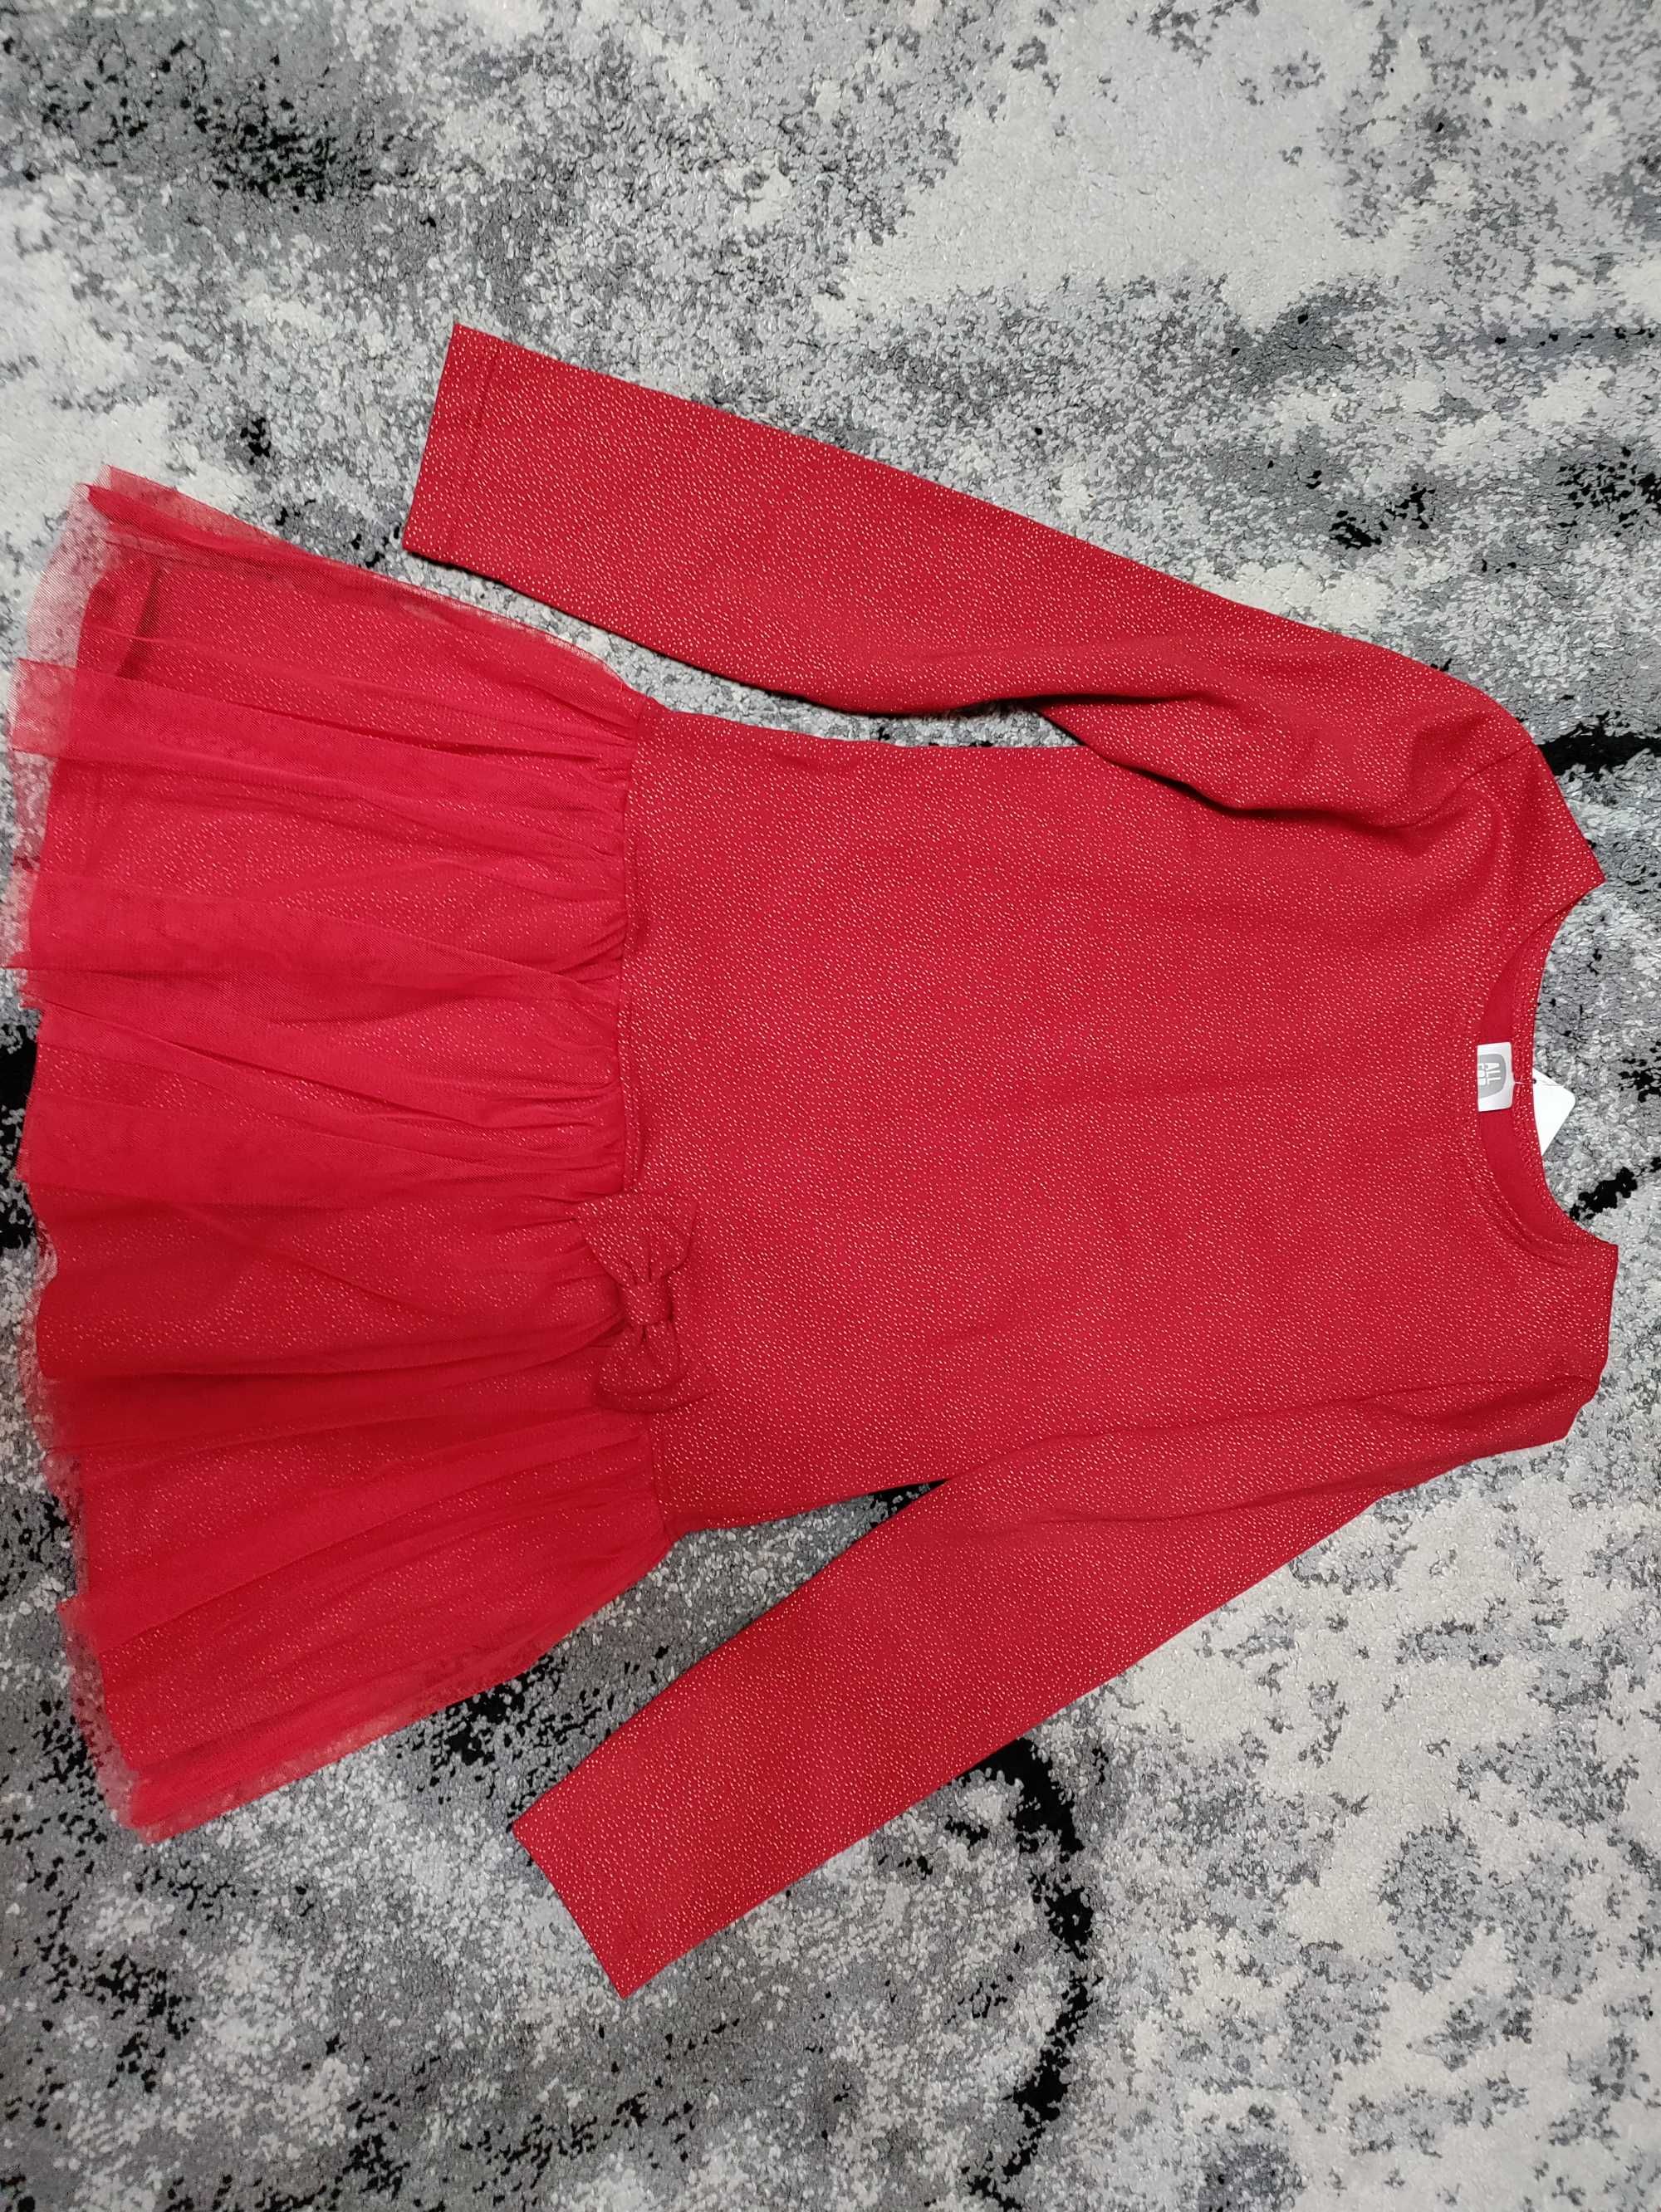 Elegancka sukienka, czerwona, świąteczna rozmiar 140/146 All For Kids